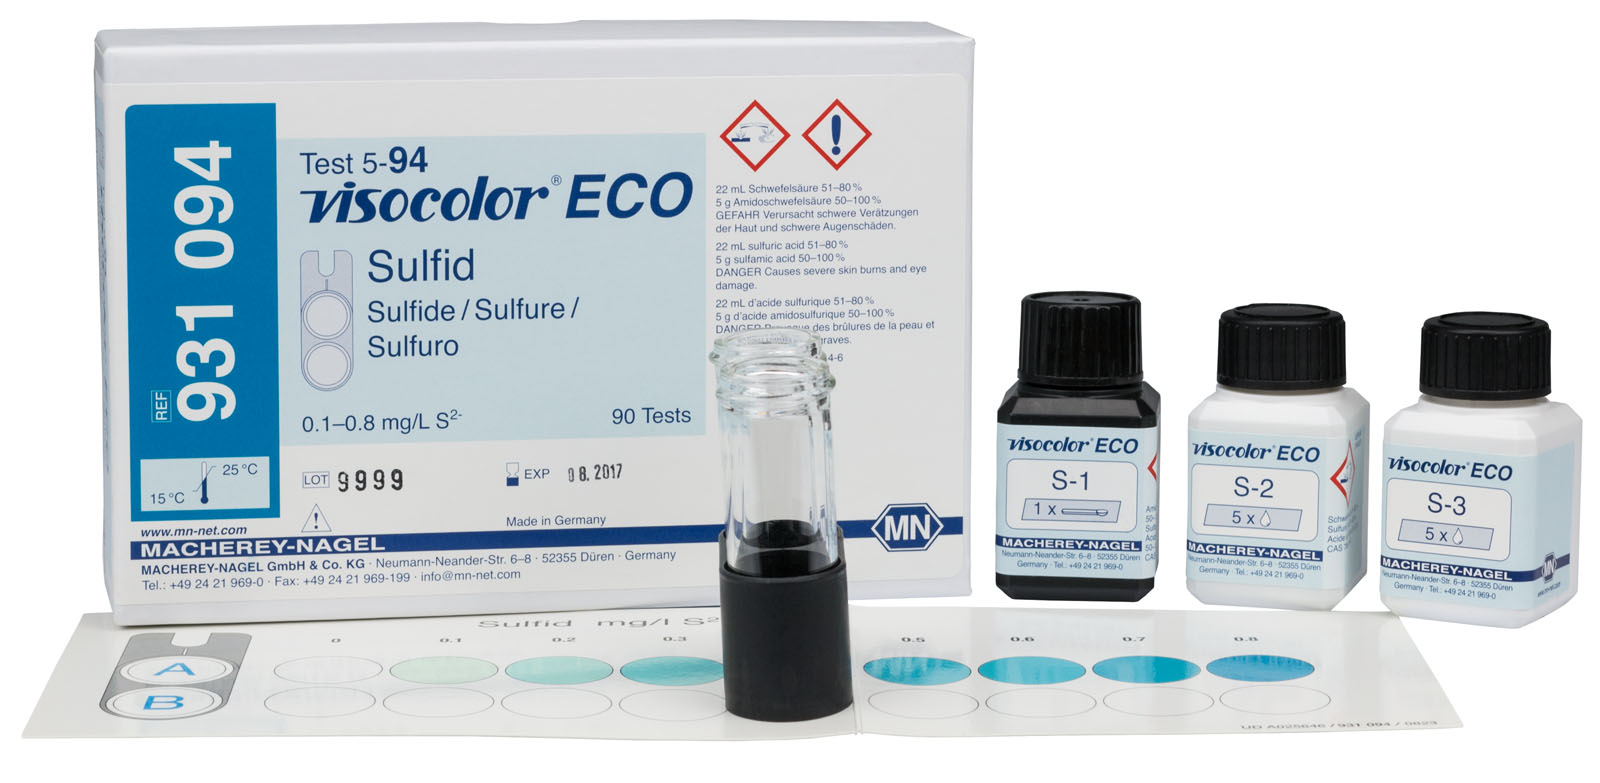 VISOCOLOR® ECO Sulphide Test Kit